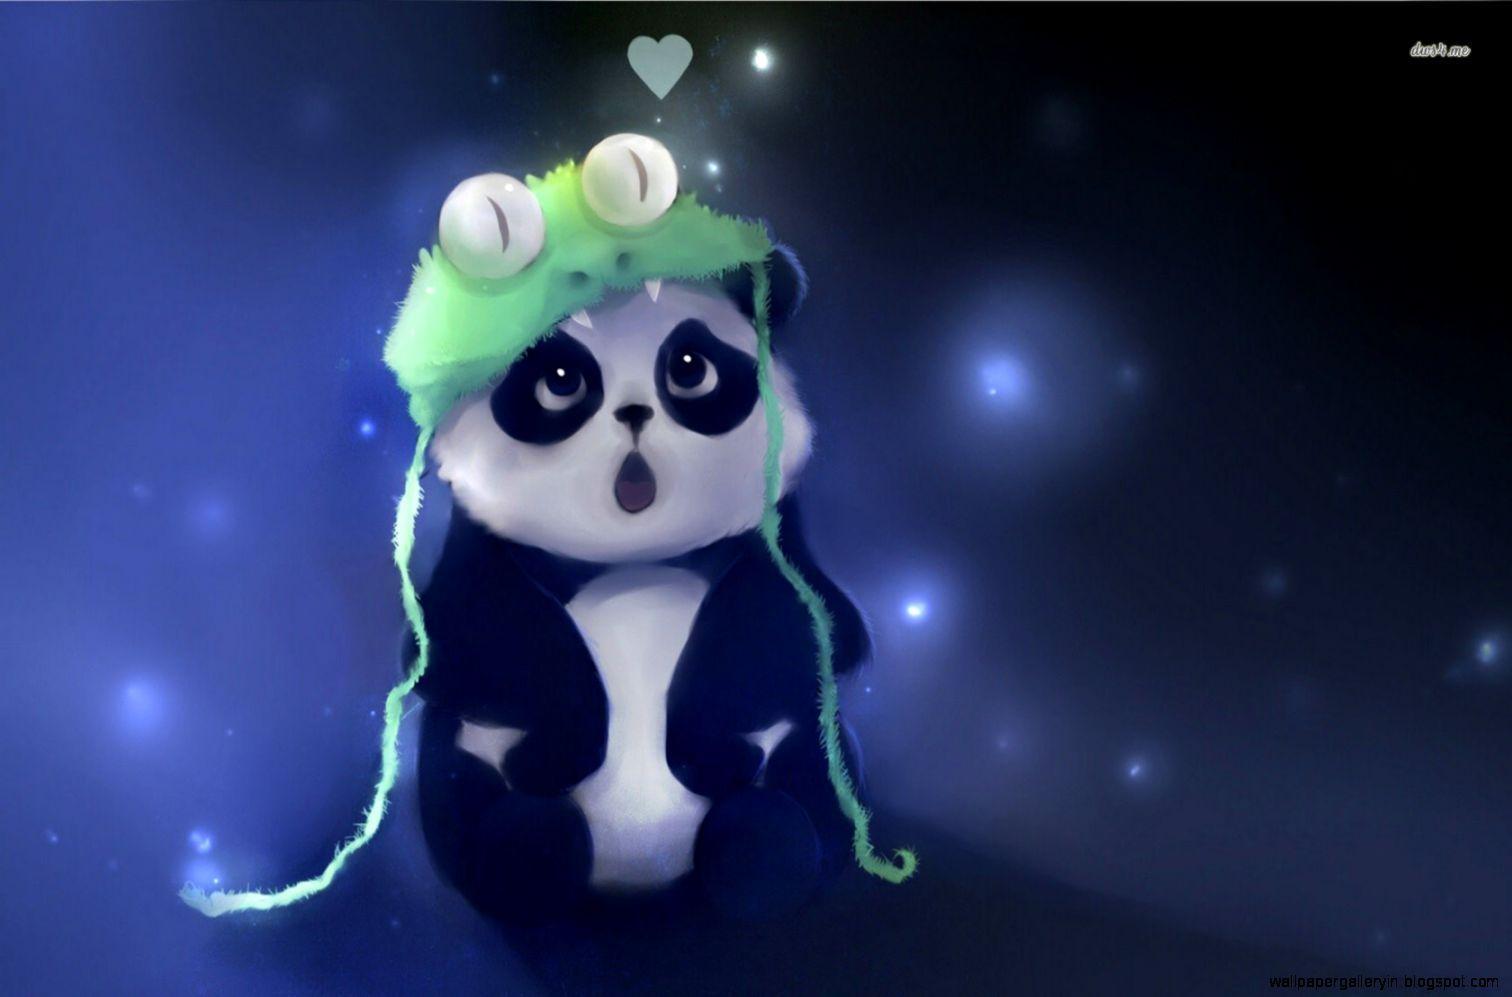 Cute Baby Panda Artwork Wallpaper